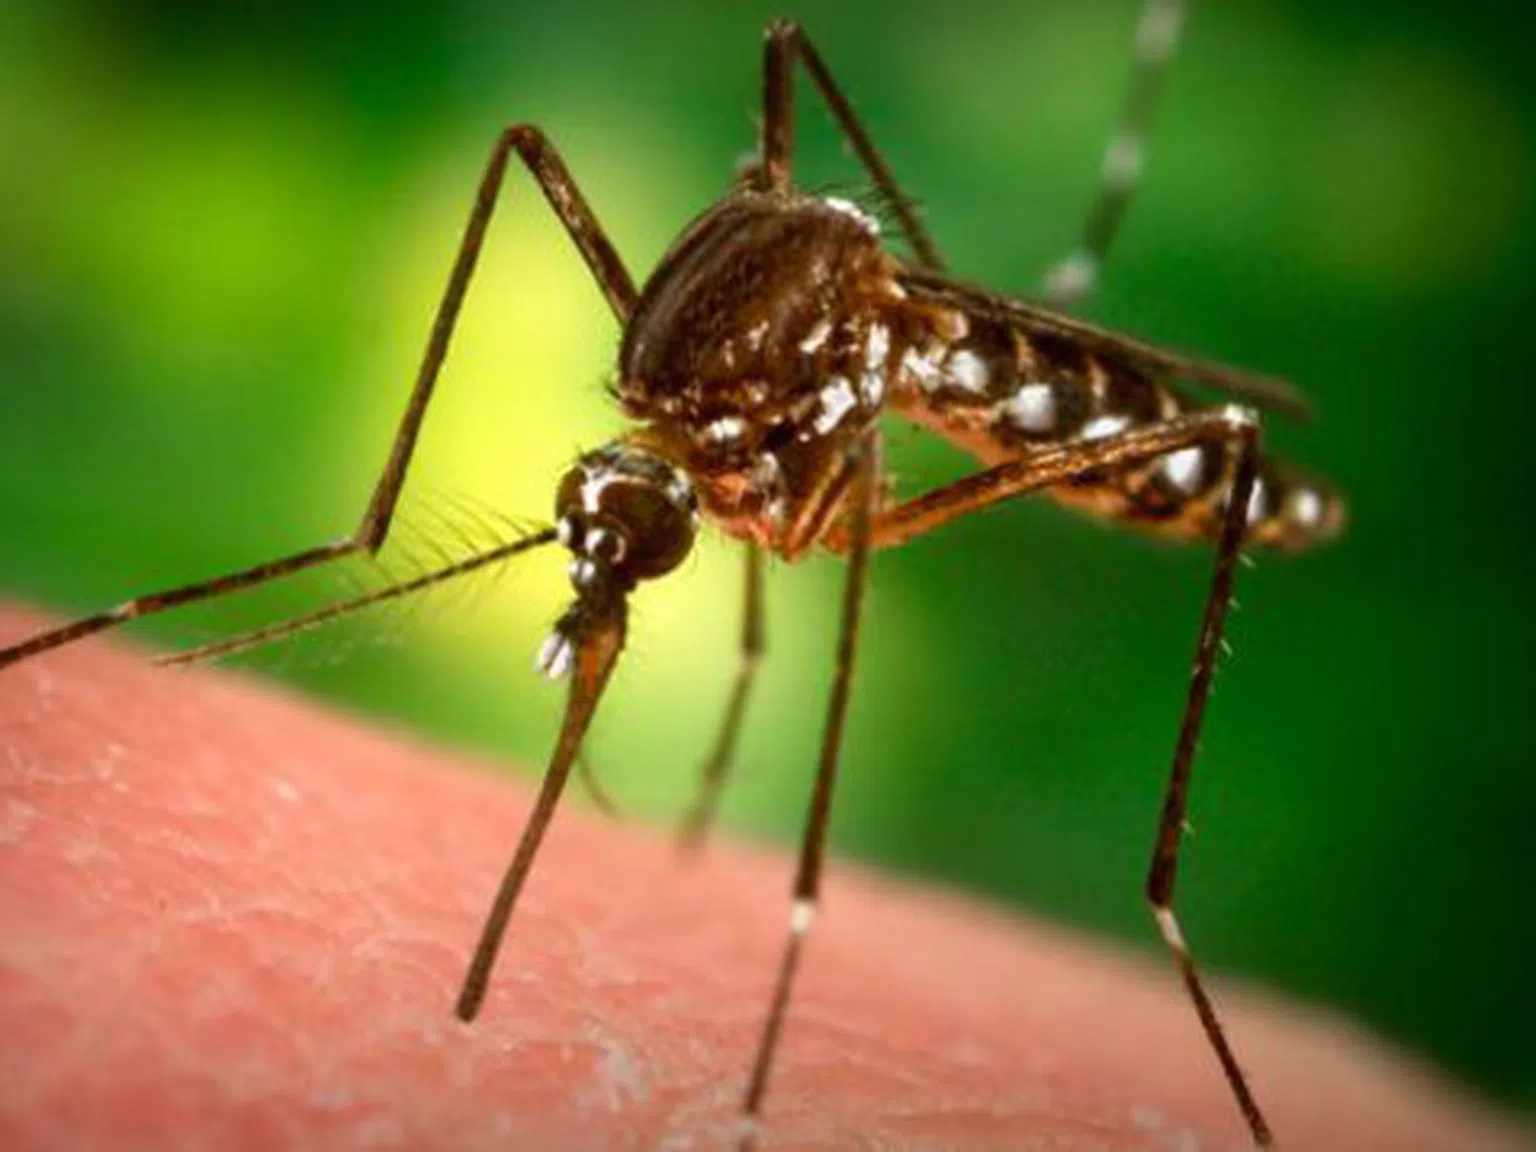 Откриха защо комарите хапят само някои хора